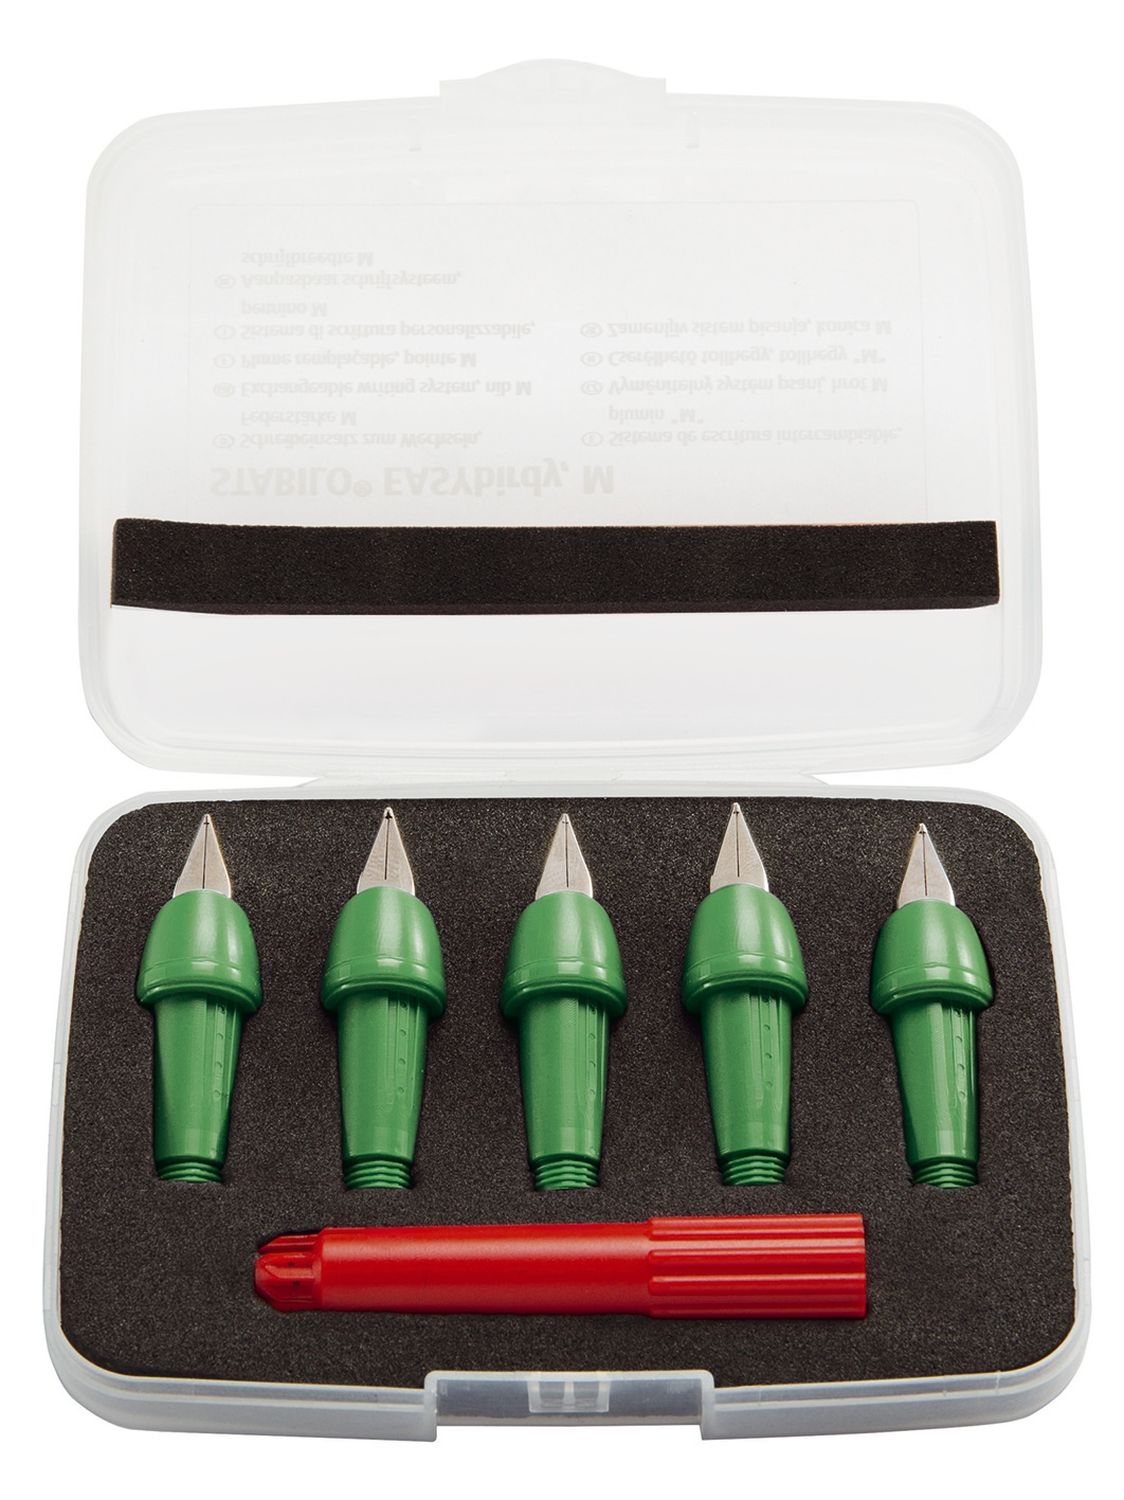 Schreibeinsatz EASYbirdy® - Feder M, 5 Stück, grasgrün